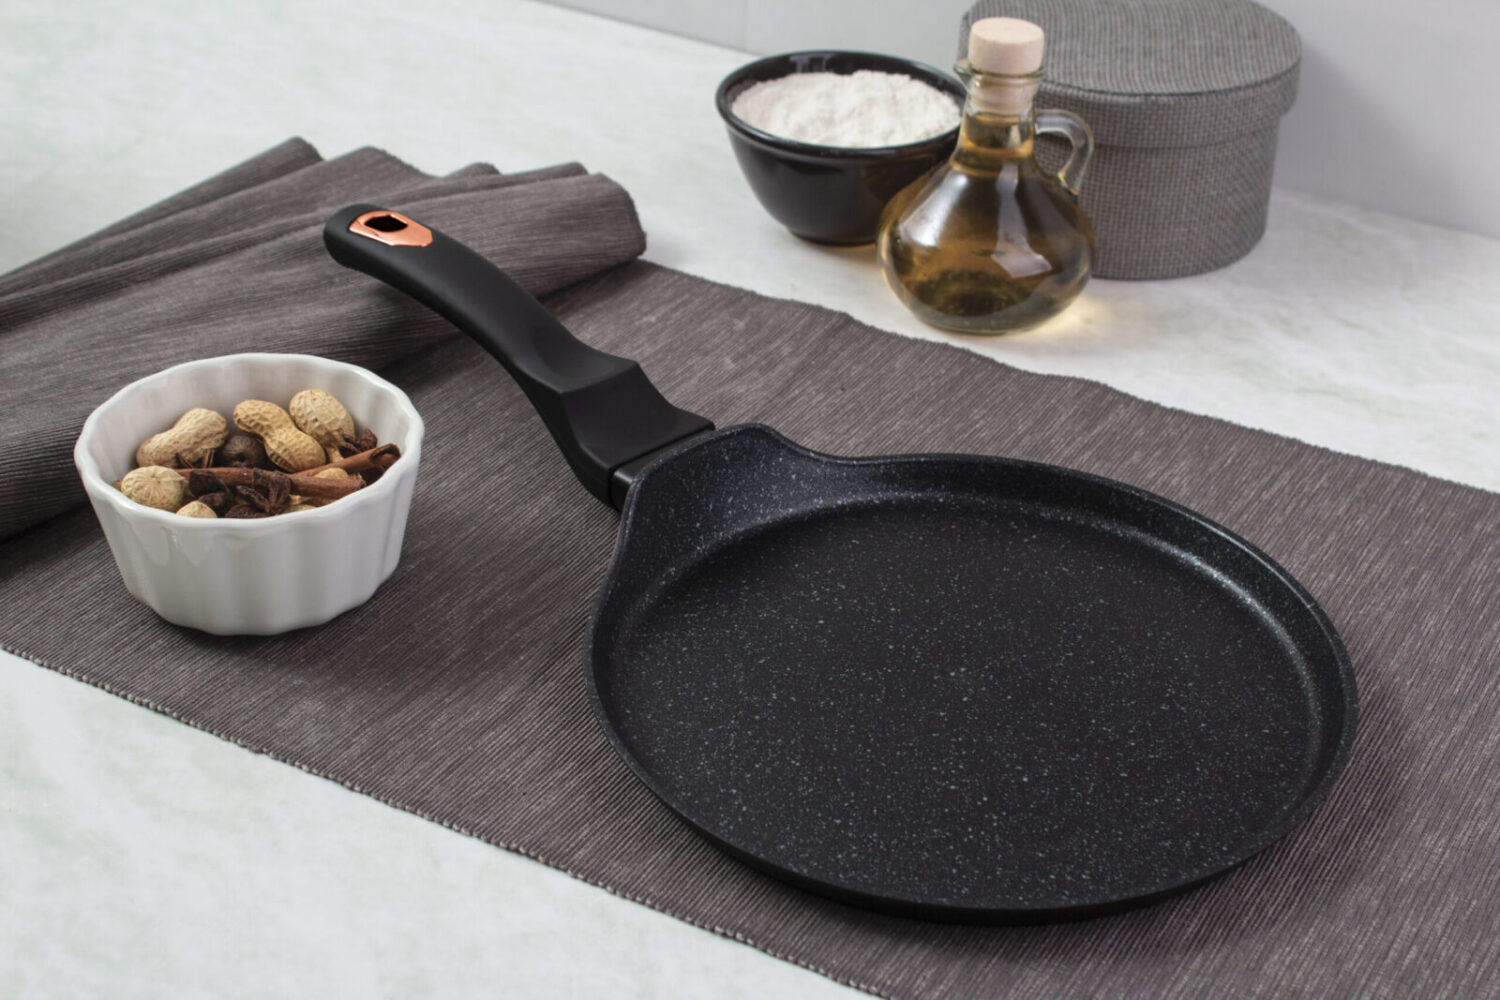 Berlinger Haus 25cm Marble Coating Pancake Pan (Crepe pan)